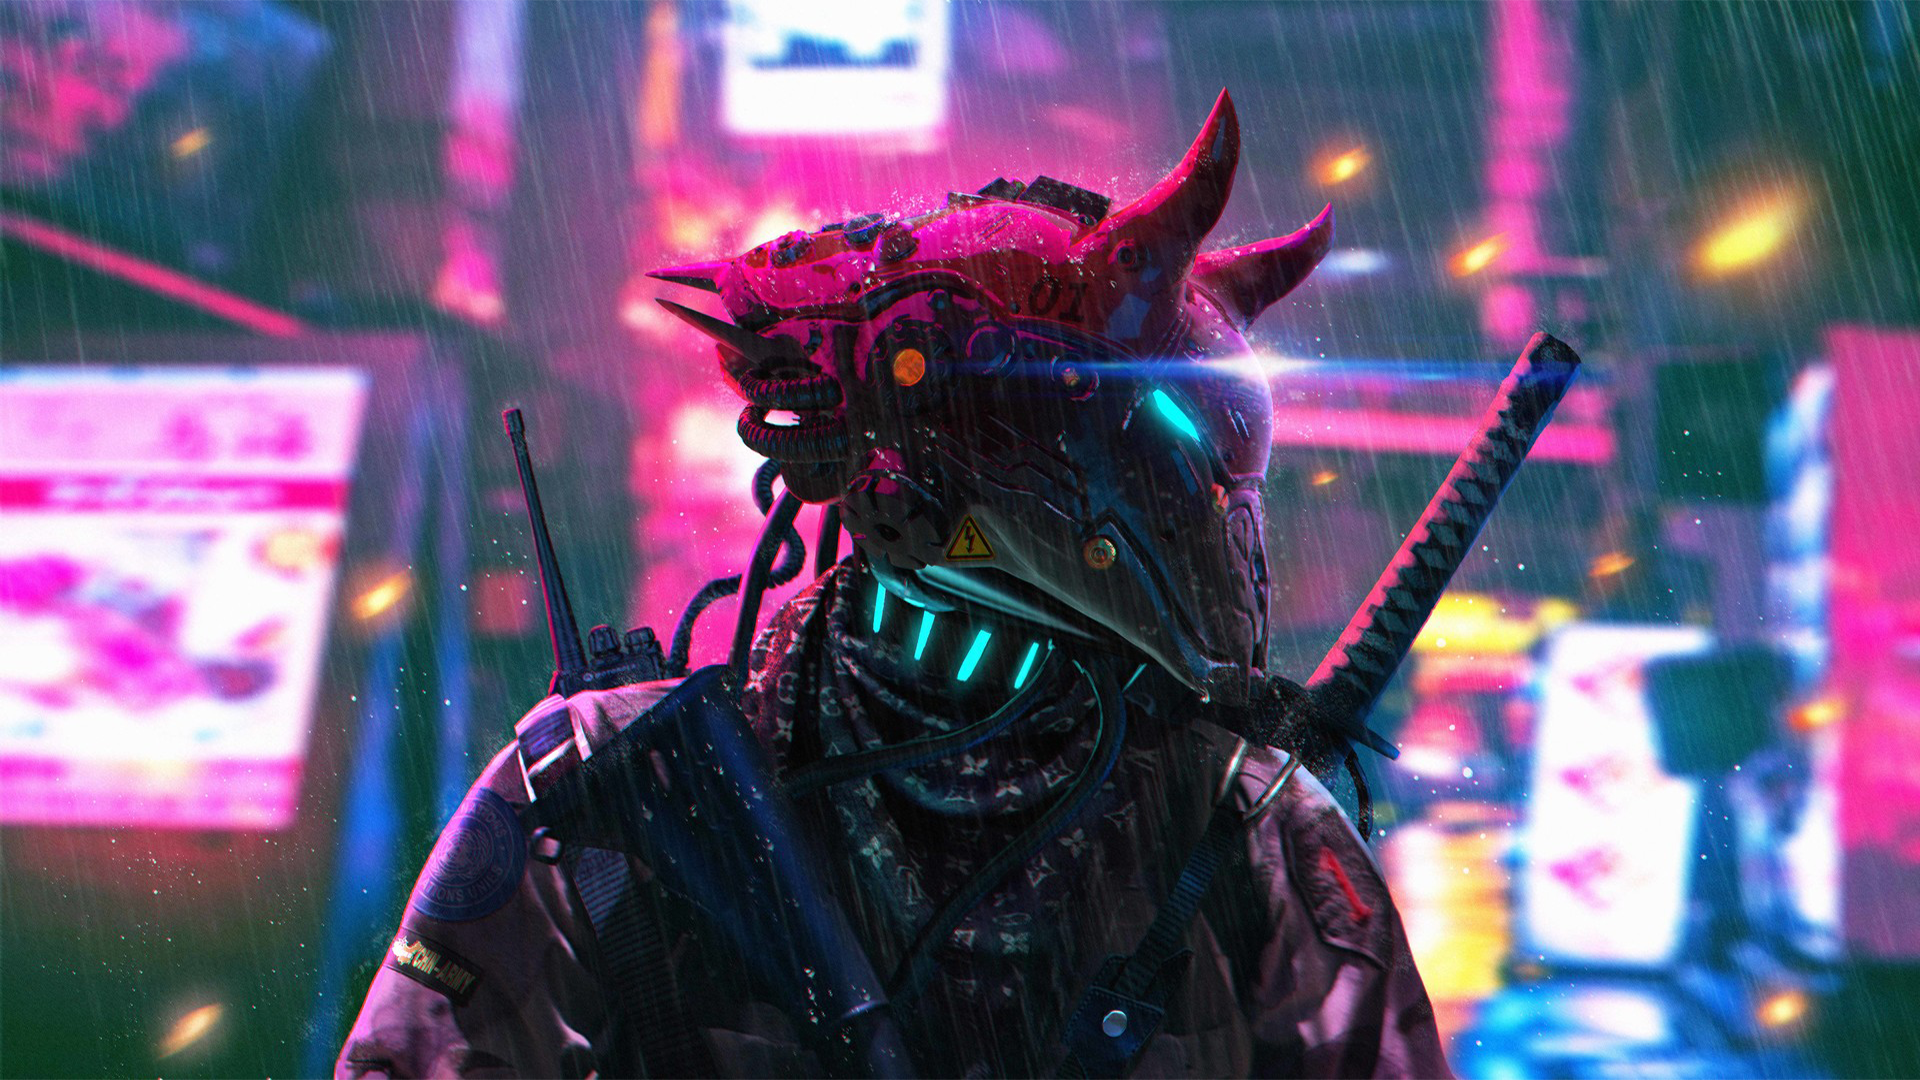 35+ Best Cyberpunk HD Wallpapers [ Ultra HD ]